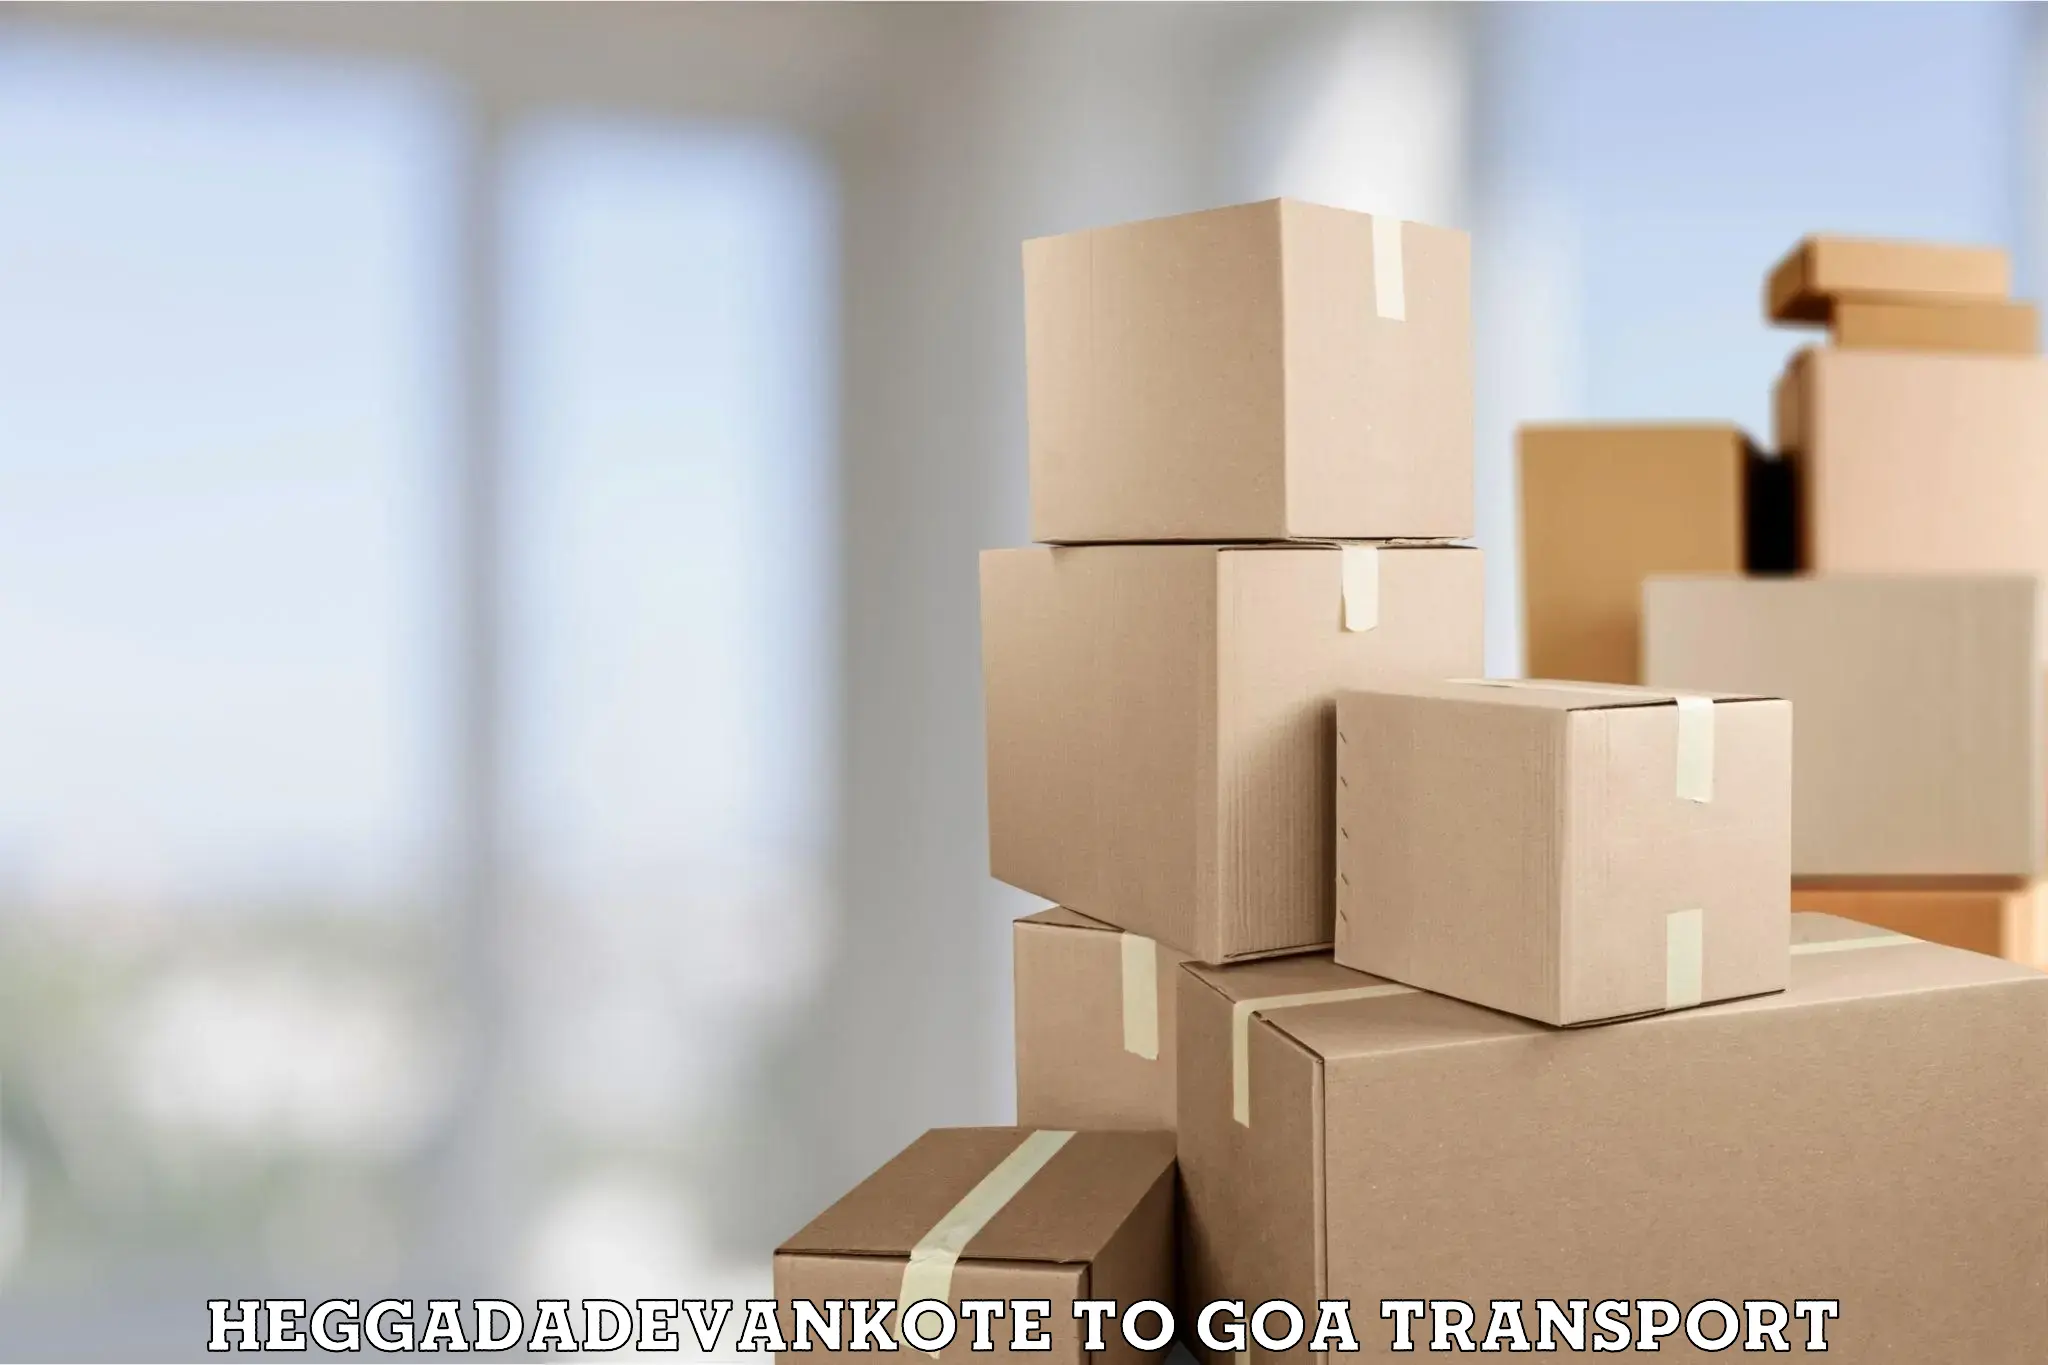 India truck logistics services Heggadadevankote to IIT Goa